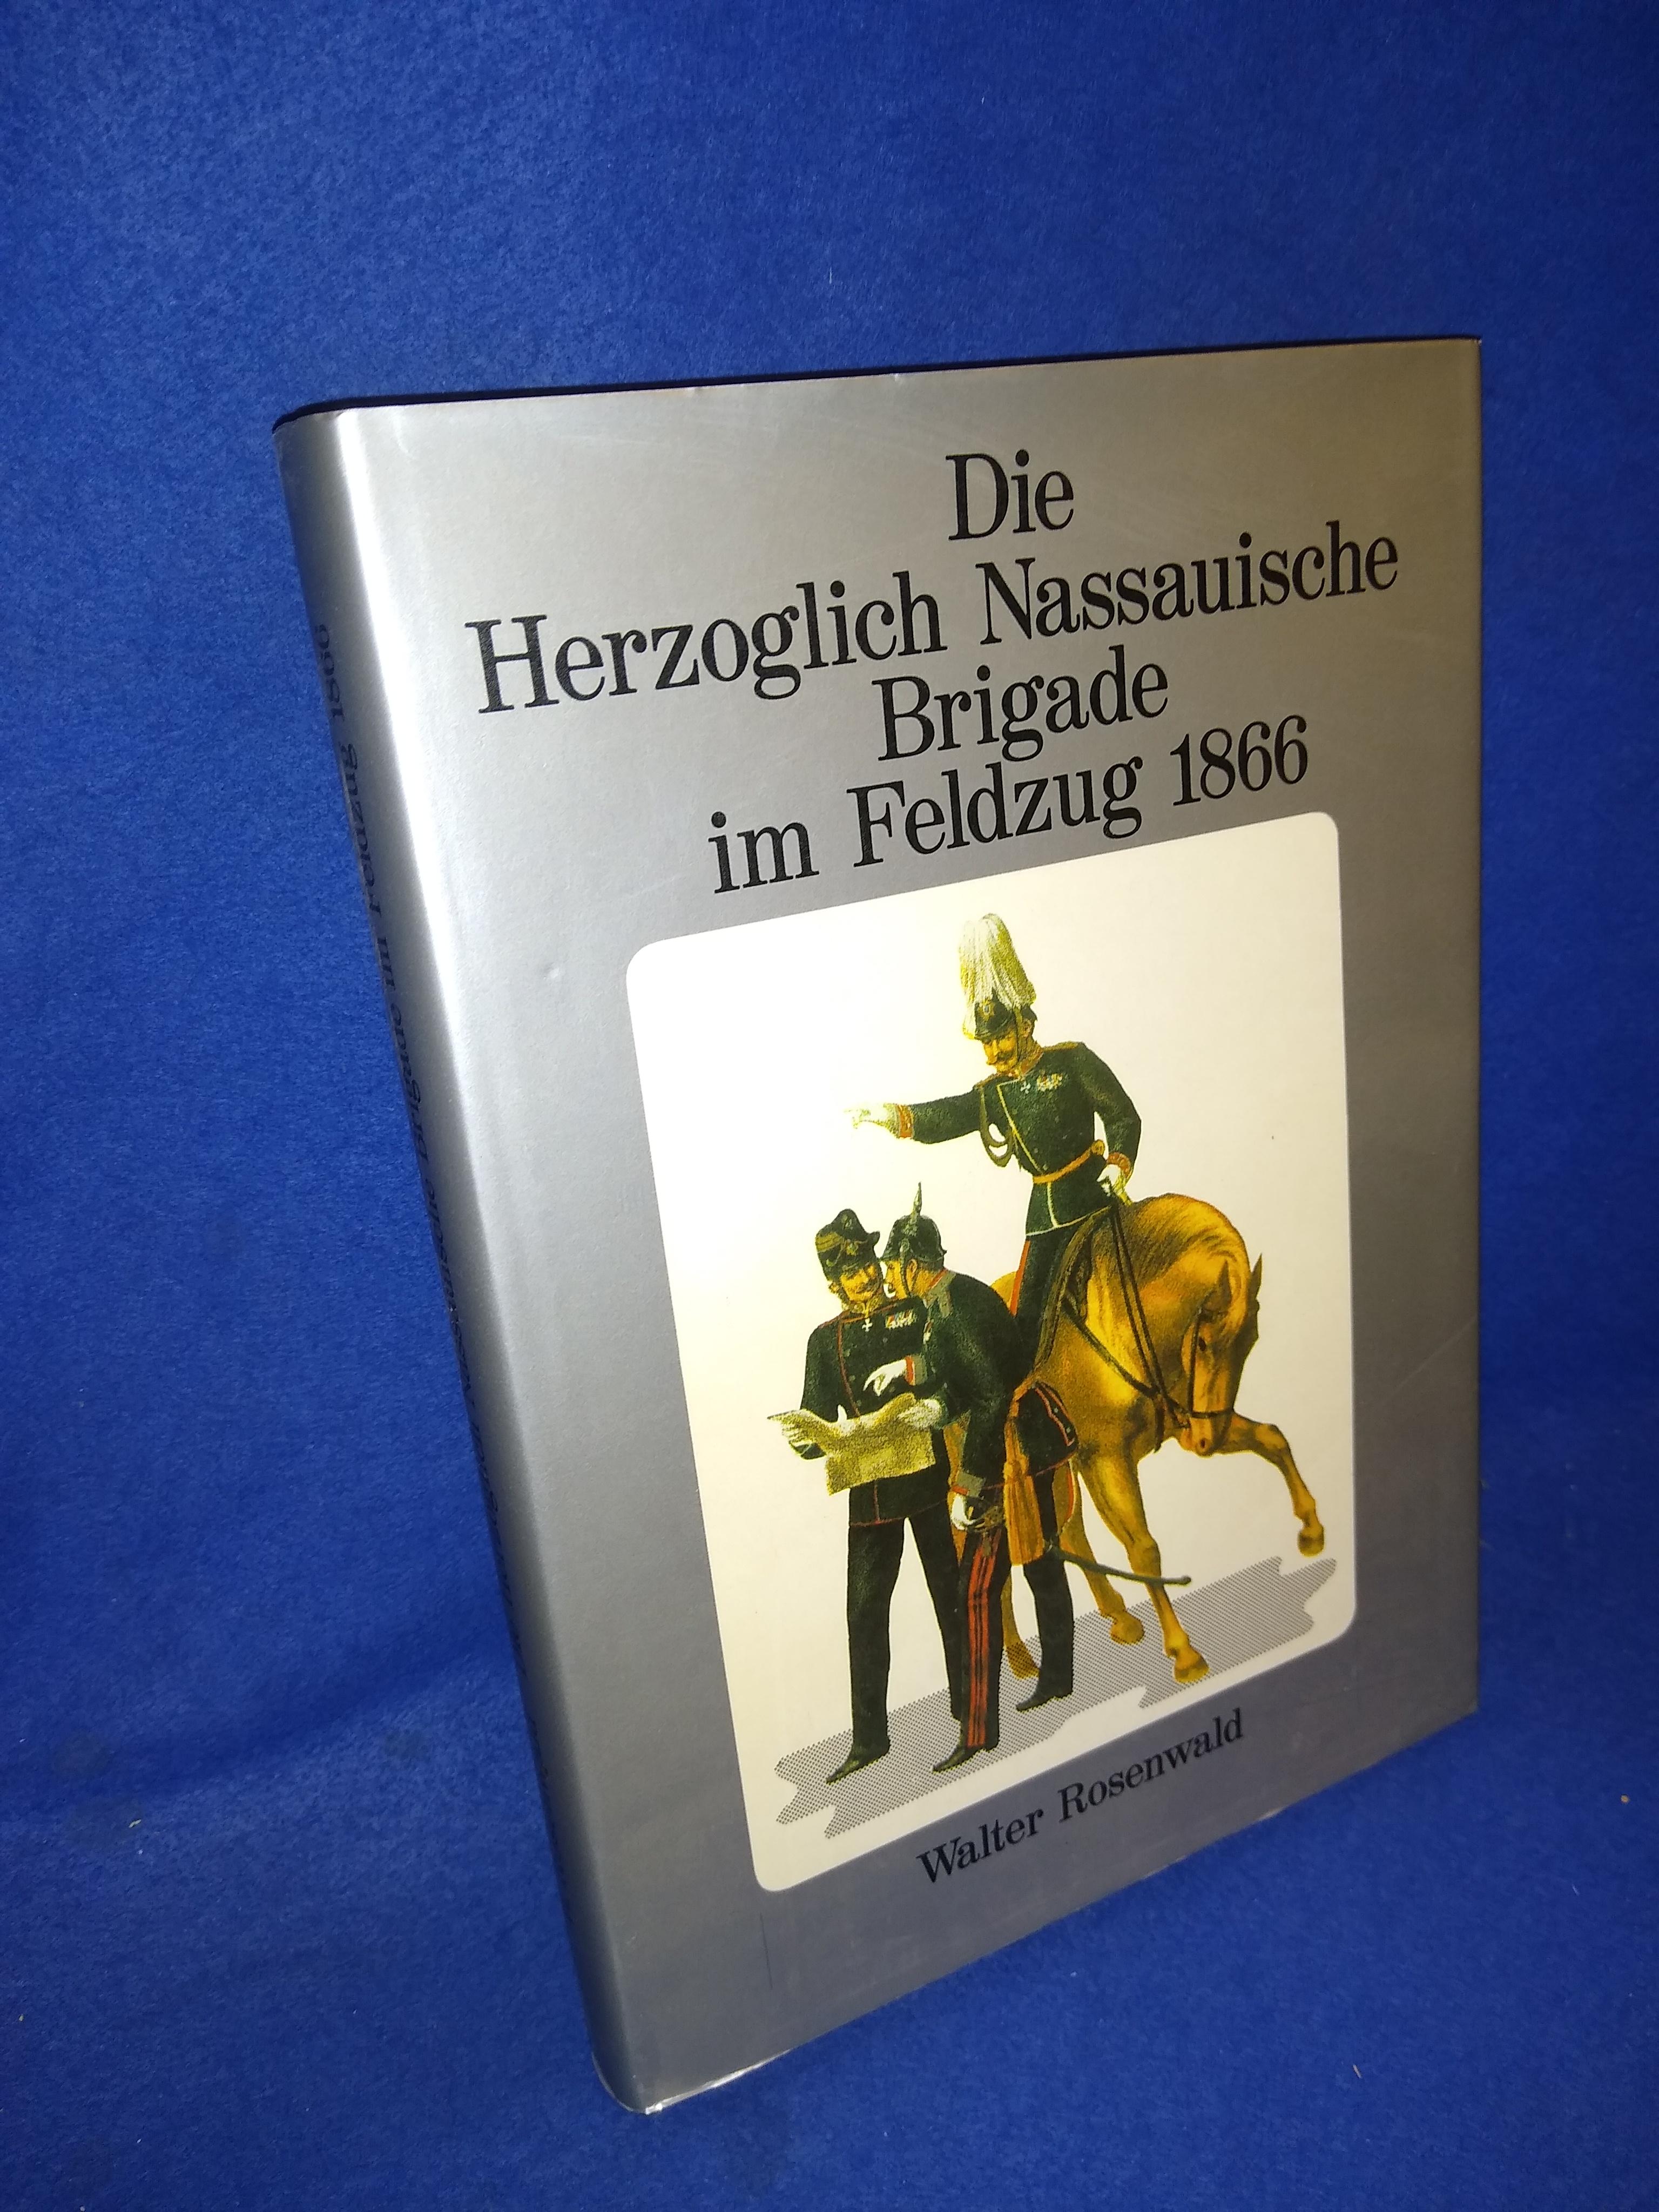 Die Herzoglich Nassauische Brigade im Feldzug 1866 unter Berücksichtigung von Feldtruppen aus Kurhessen, Hessen-Darmstadt, Baden, Württemberg und Österreich Band III. 